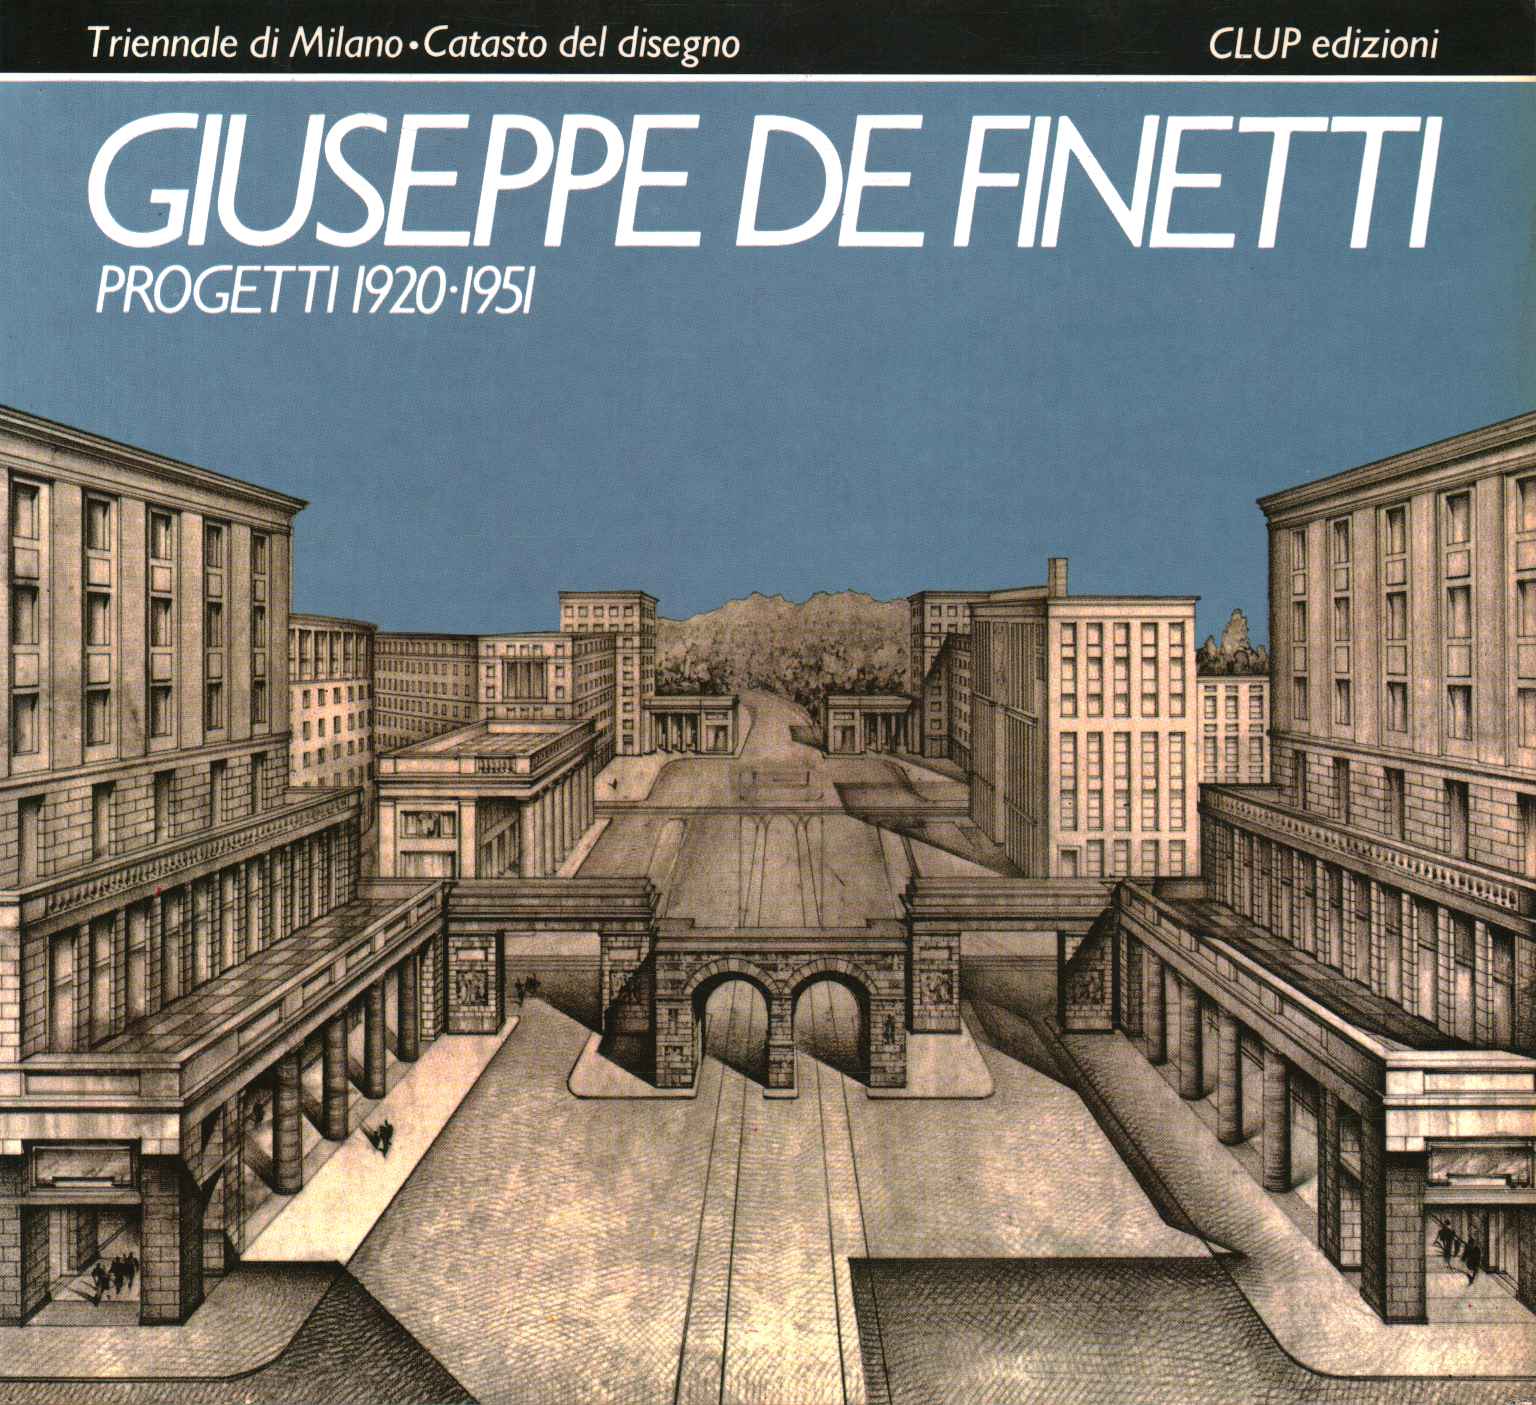 Giuseppe De Finetti. Proyectos 1920-1951